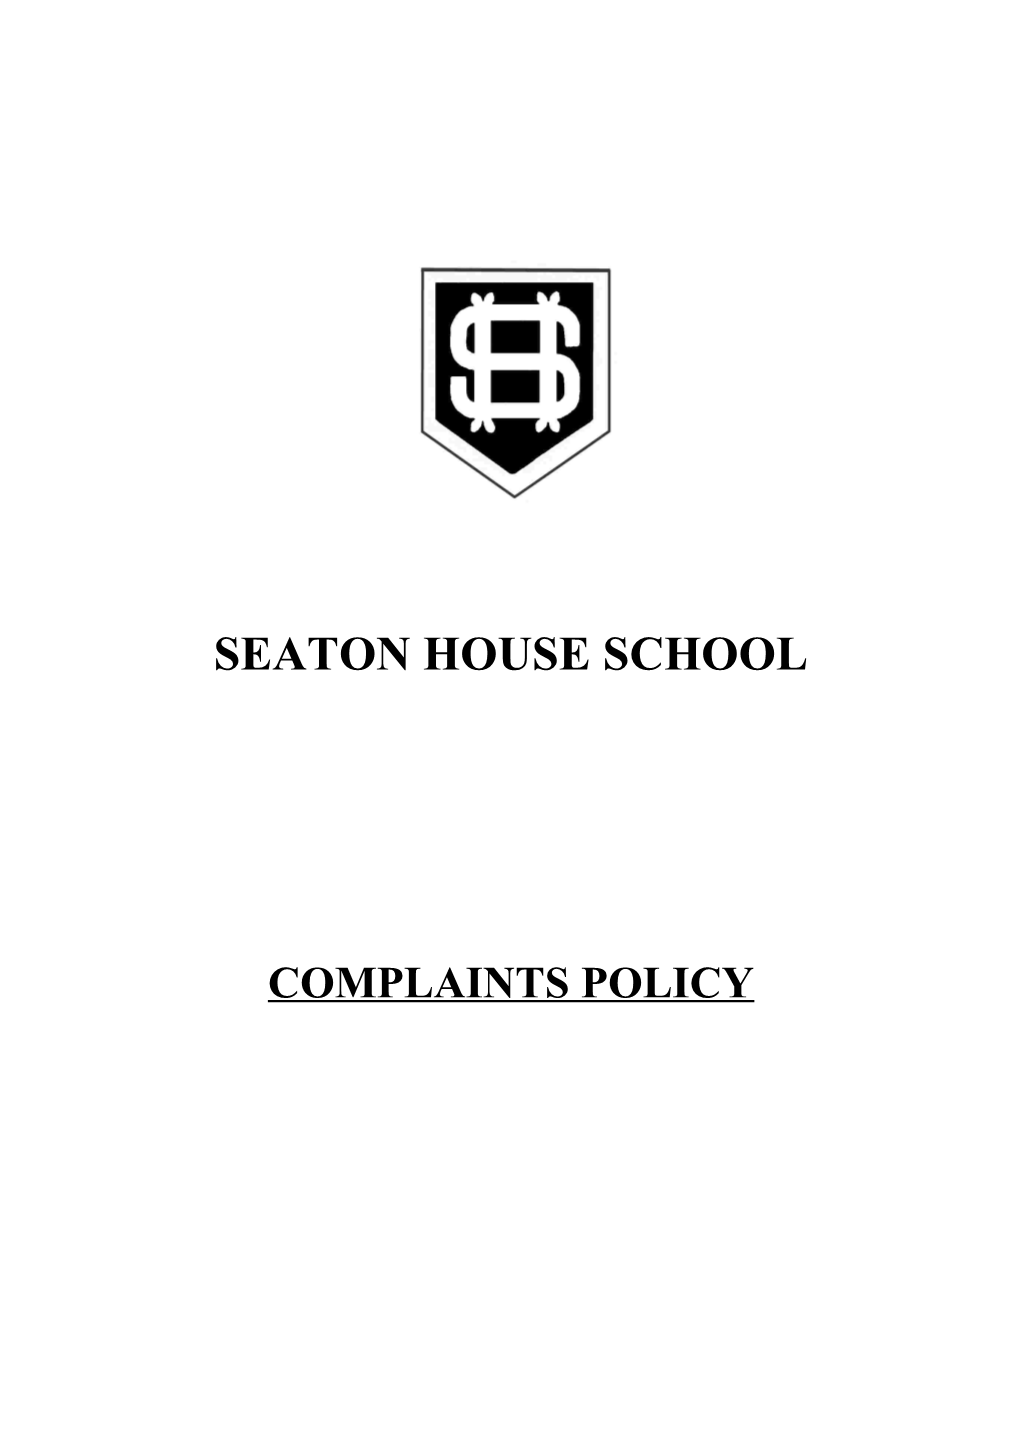 Seaton House School